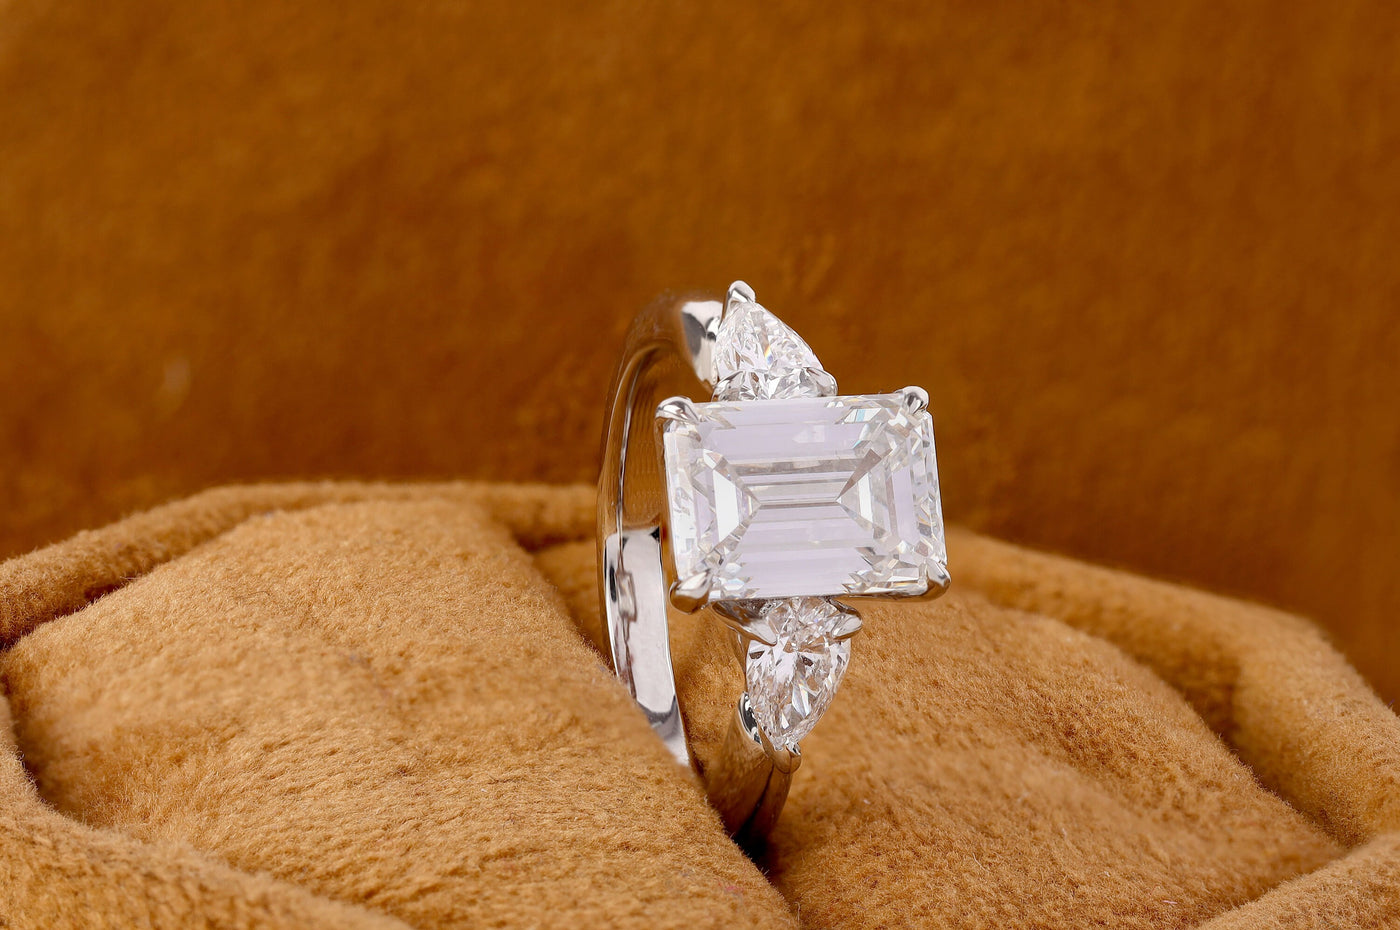 3.20 Carat Emerald Cut Moissanite Ring, Pear Cut Moissanite Wedding Ring, Three Stone Ring, Moissanite Engagement Ring, 14K White Gold Ring